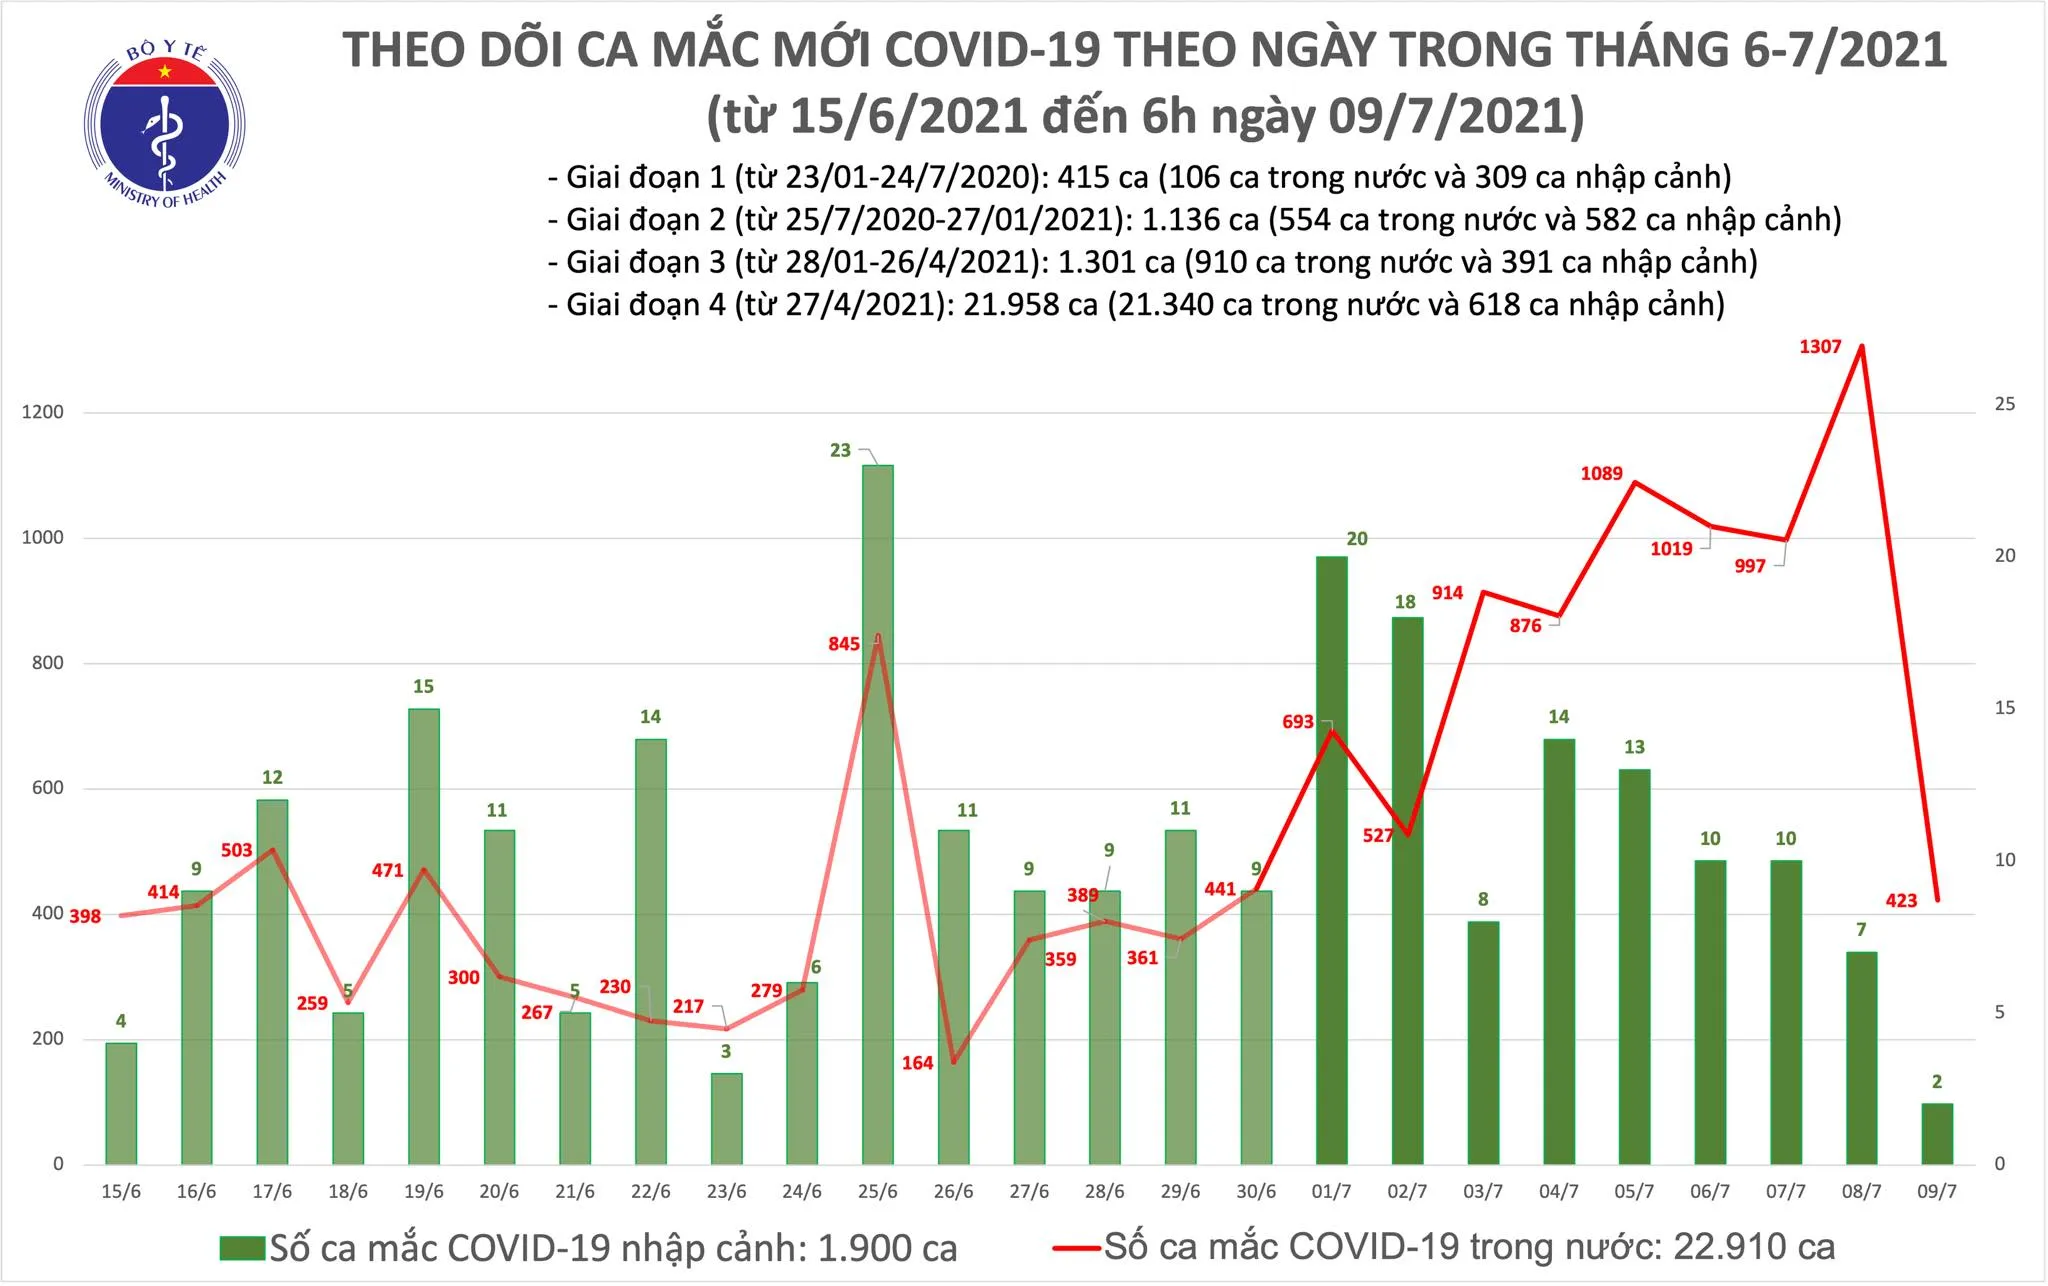 Tin tức Covid-19 tại Việt Nam: Sáng 9/7, thêm 425 ca mắc tại nhiều tỉnh, thành